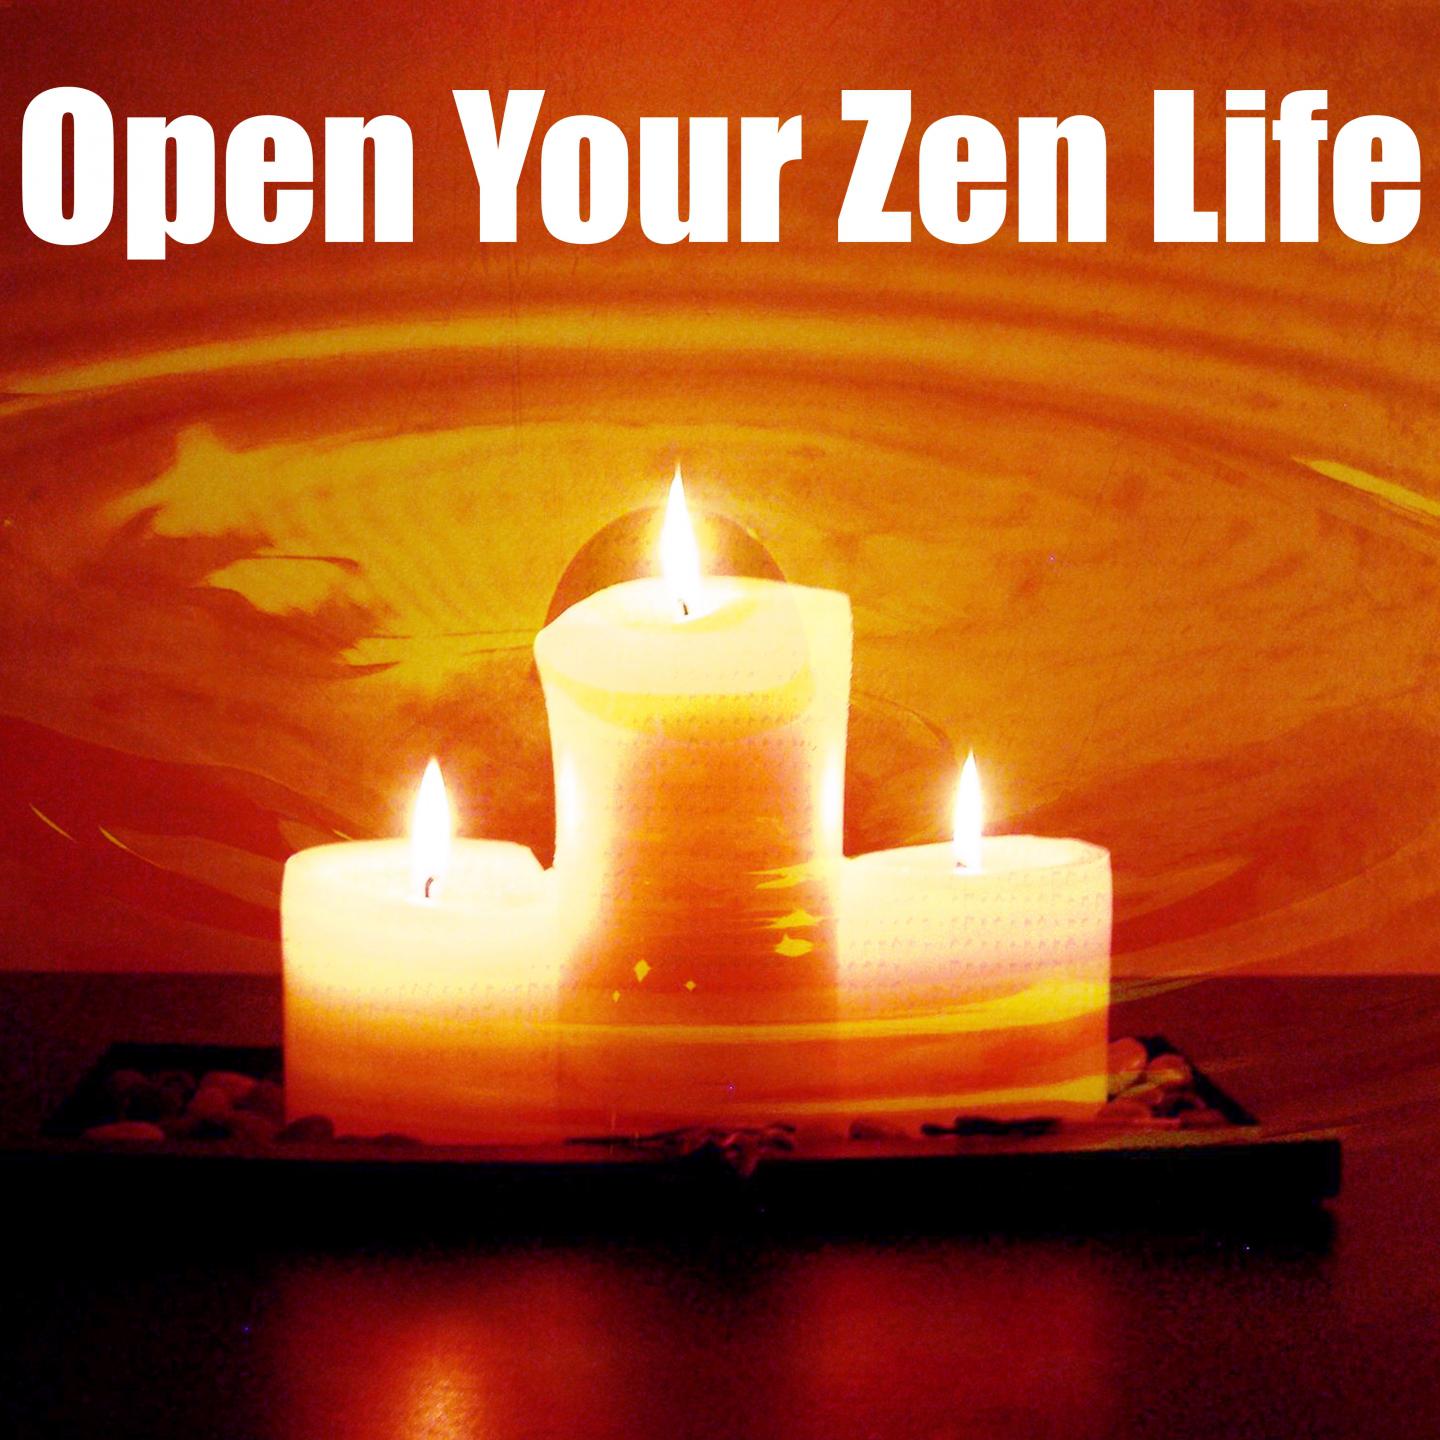 Open Your Zen Life